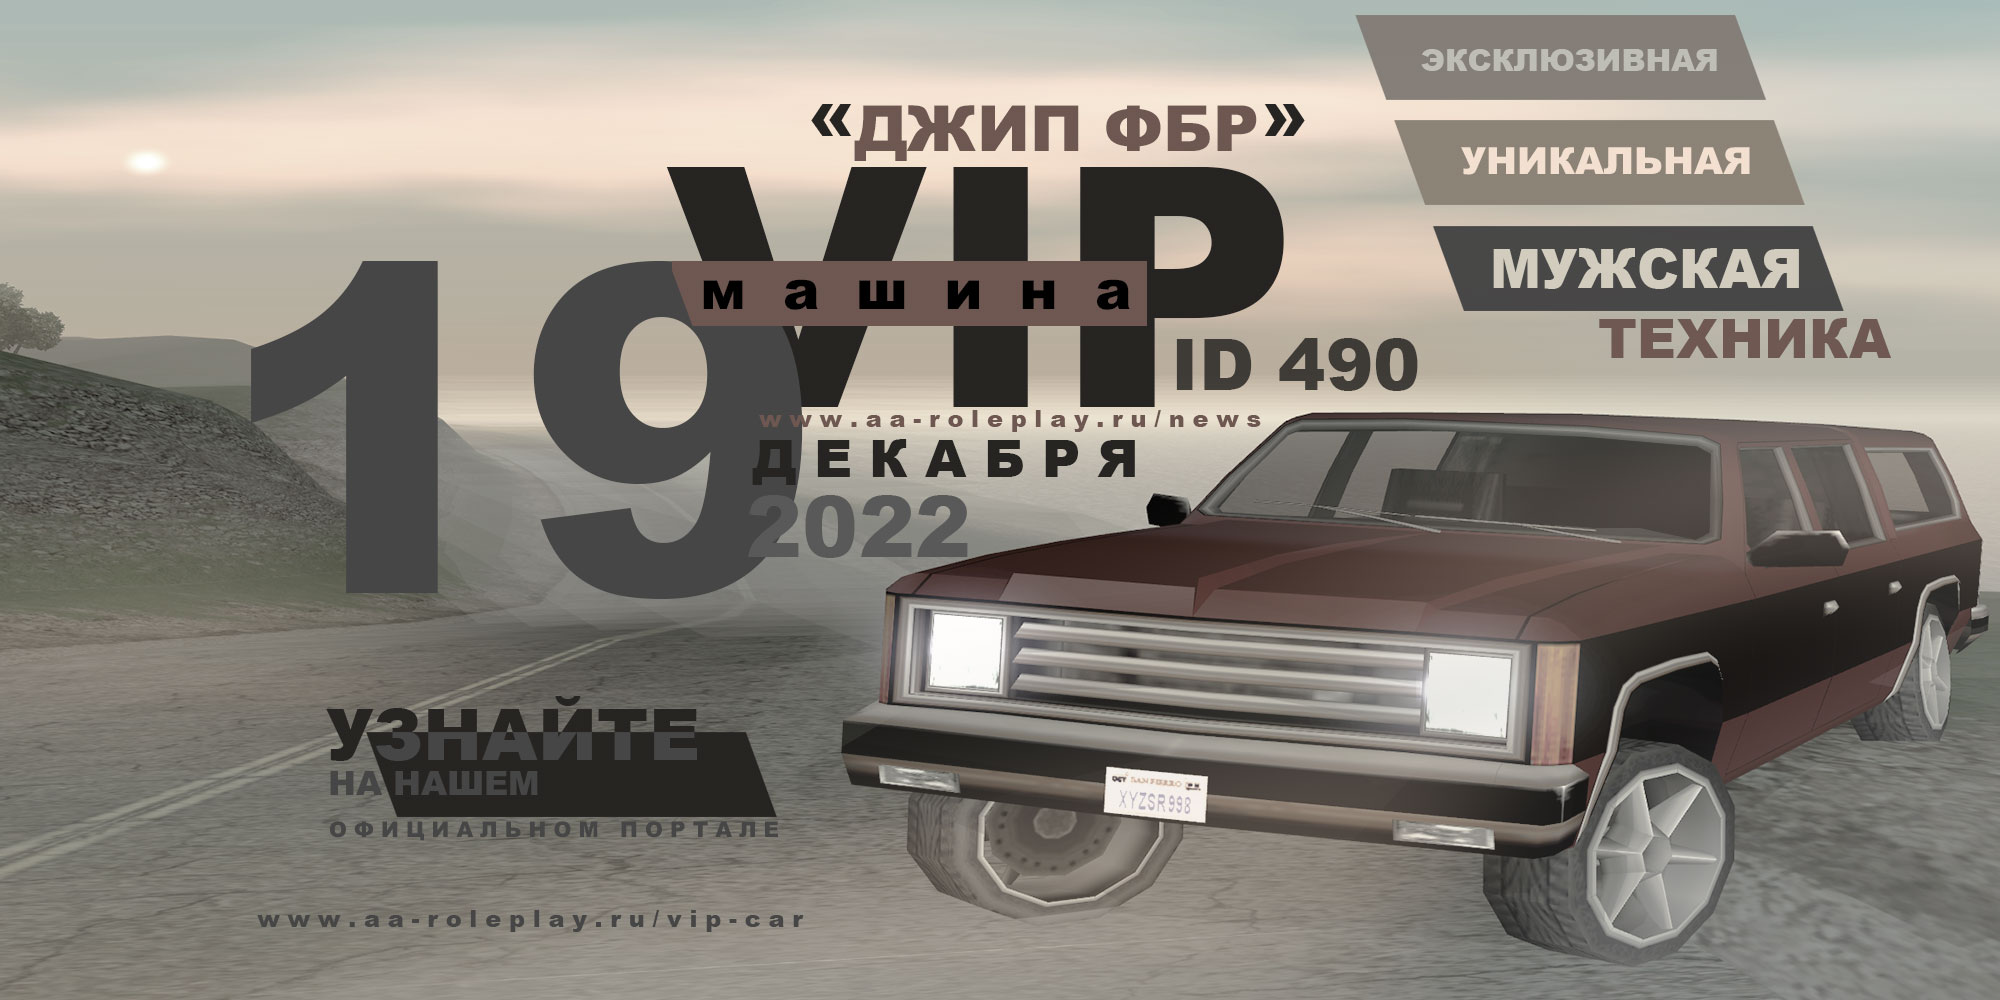 Постер обновления - Самый эксклюзивный длиннобазный Джип ФБР - теперь доступен среди VIP-машин (222.06 КБ) Просмотров: 2009